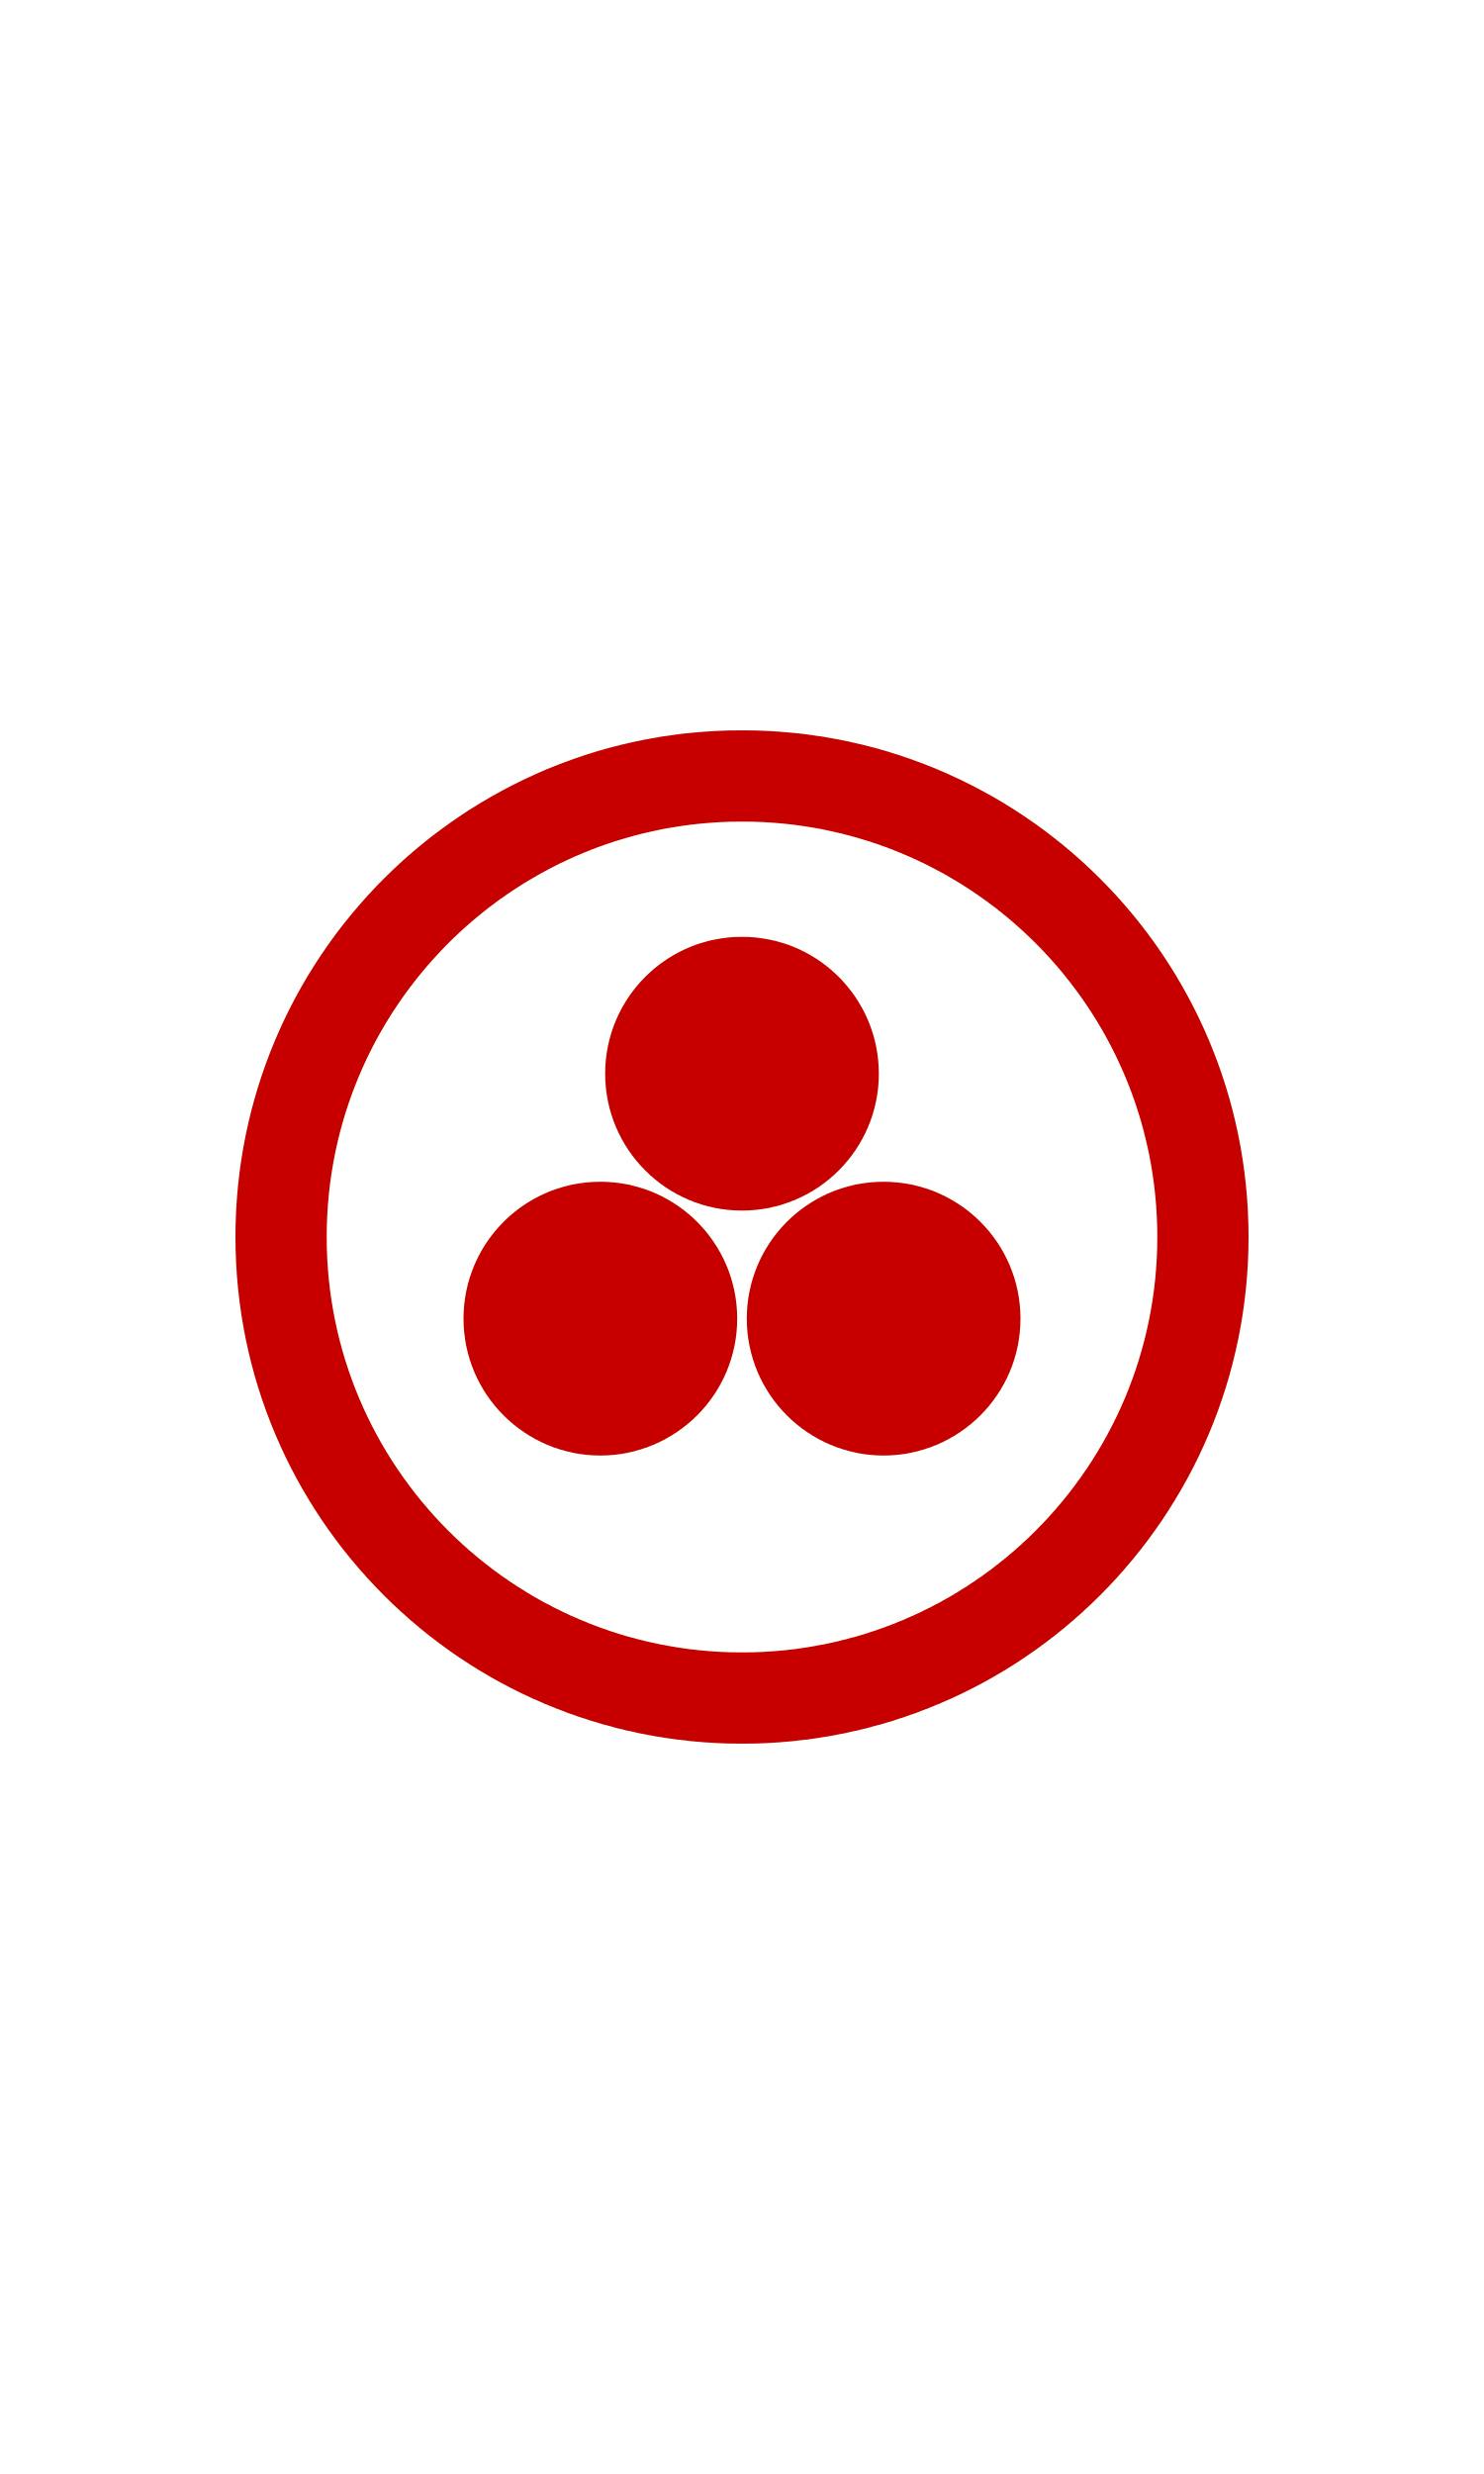 Simbolo della Bandiera della Pace disegnata da Nikolaj Konstantinovič Rerich: tre sfere di colore rosso su sfondo bianco circondate da un cerchio dello stesso colore.